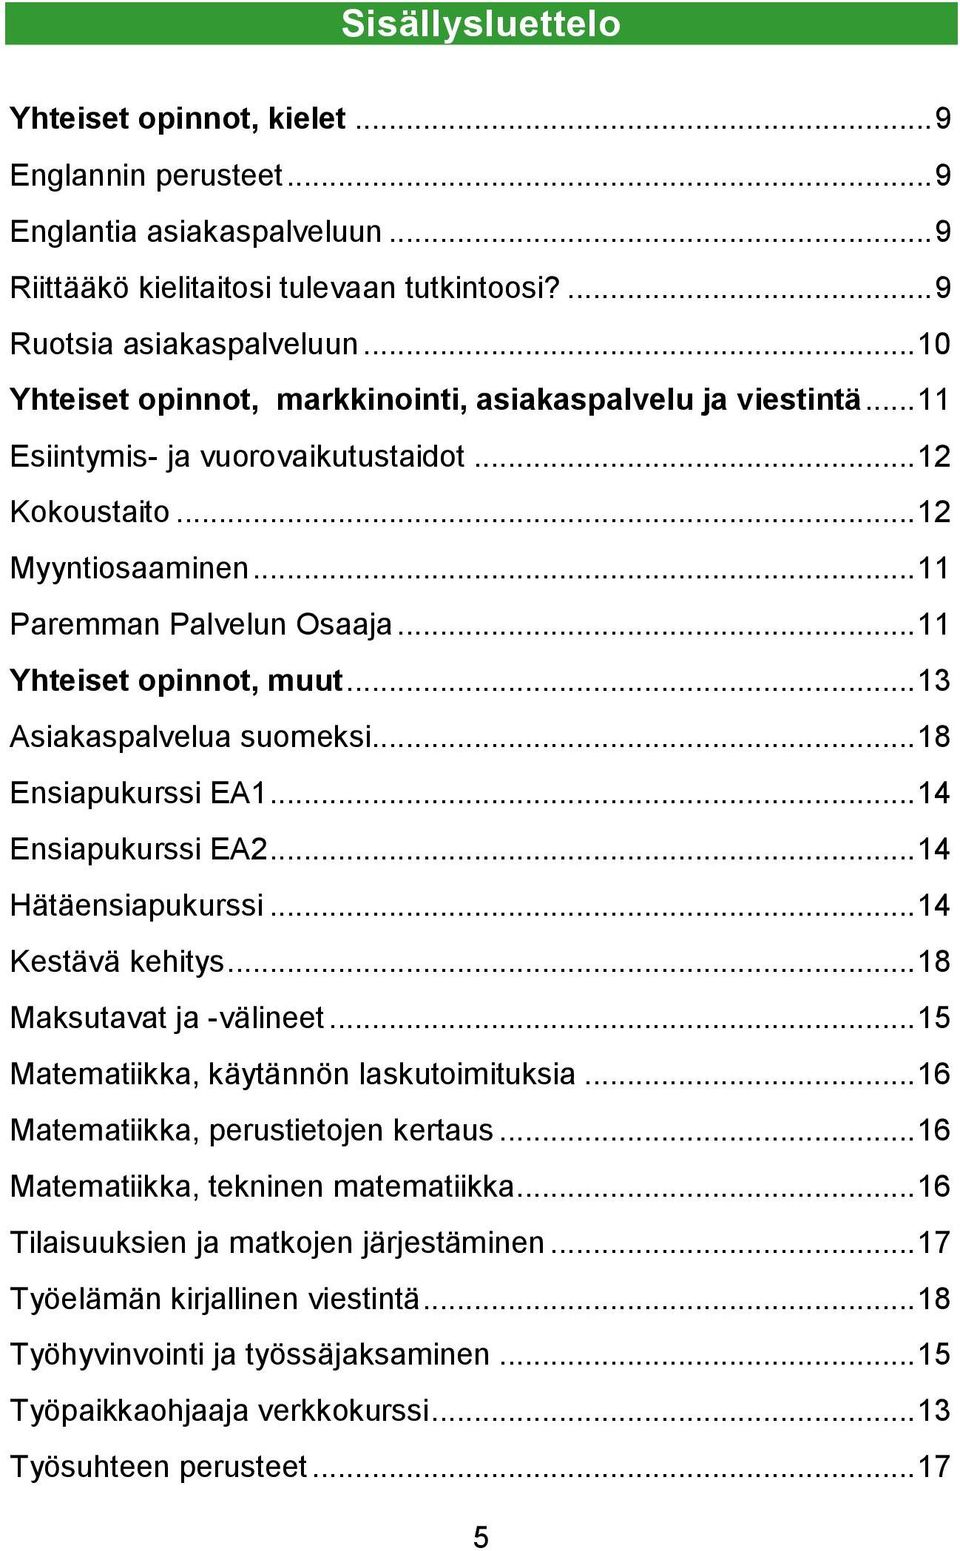 .. 11 Yhteiset opinnot, muut... 13 Asiakaspalvelua suomeksi... 18 Ensiapukurssi EA1... 14 Ensiapukurssi EA2... 14 Hätäensiapukurssi... 14 Kestävä kehitys... 18 Maksutavat ja -välineet.